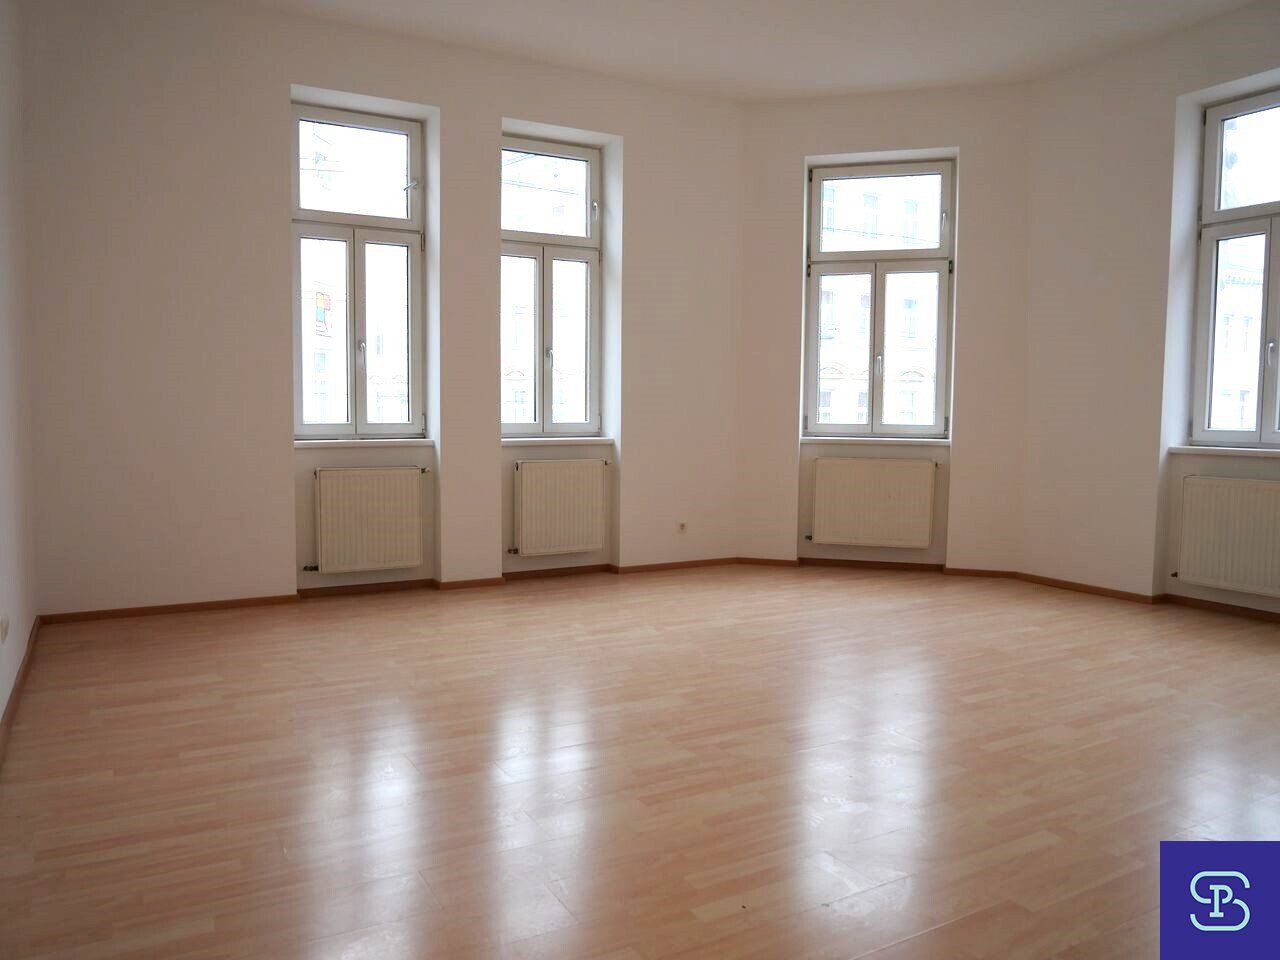 Provisionsfrei: Unbefristeter 70m² Altbau mit 2 Zimmern und Lift - 1160 Wien